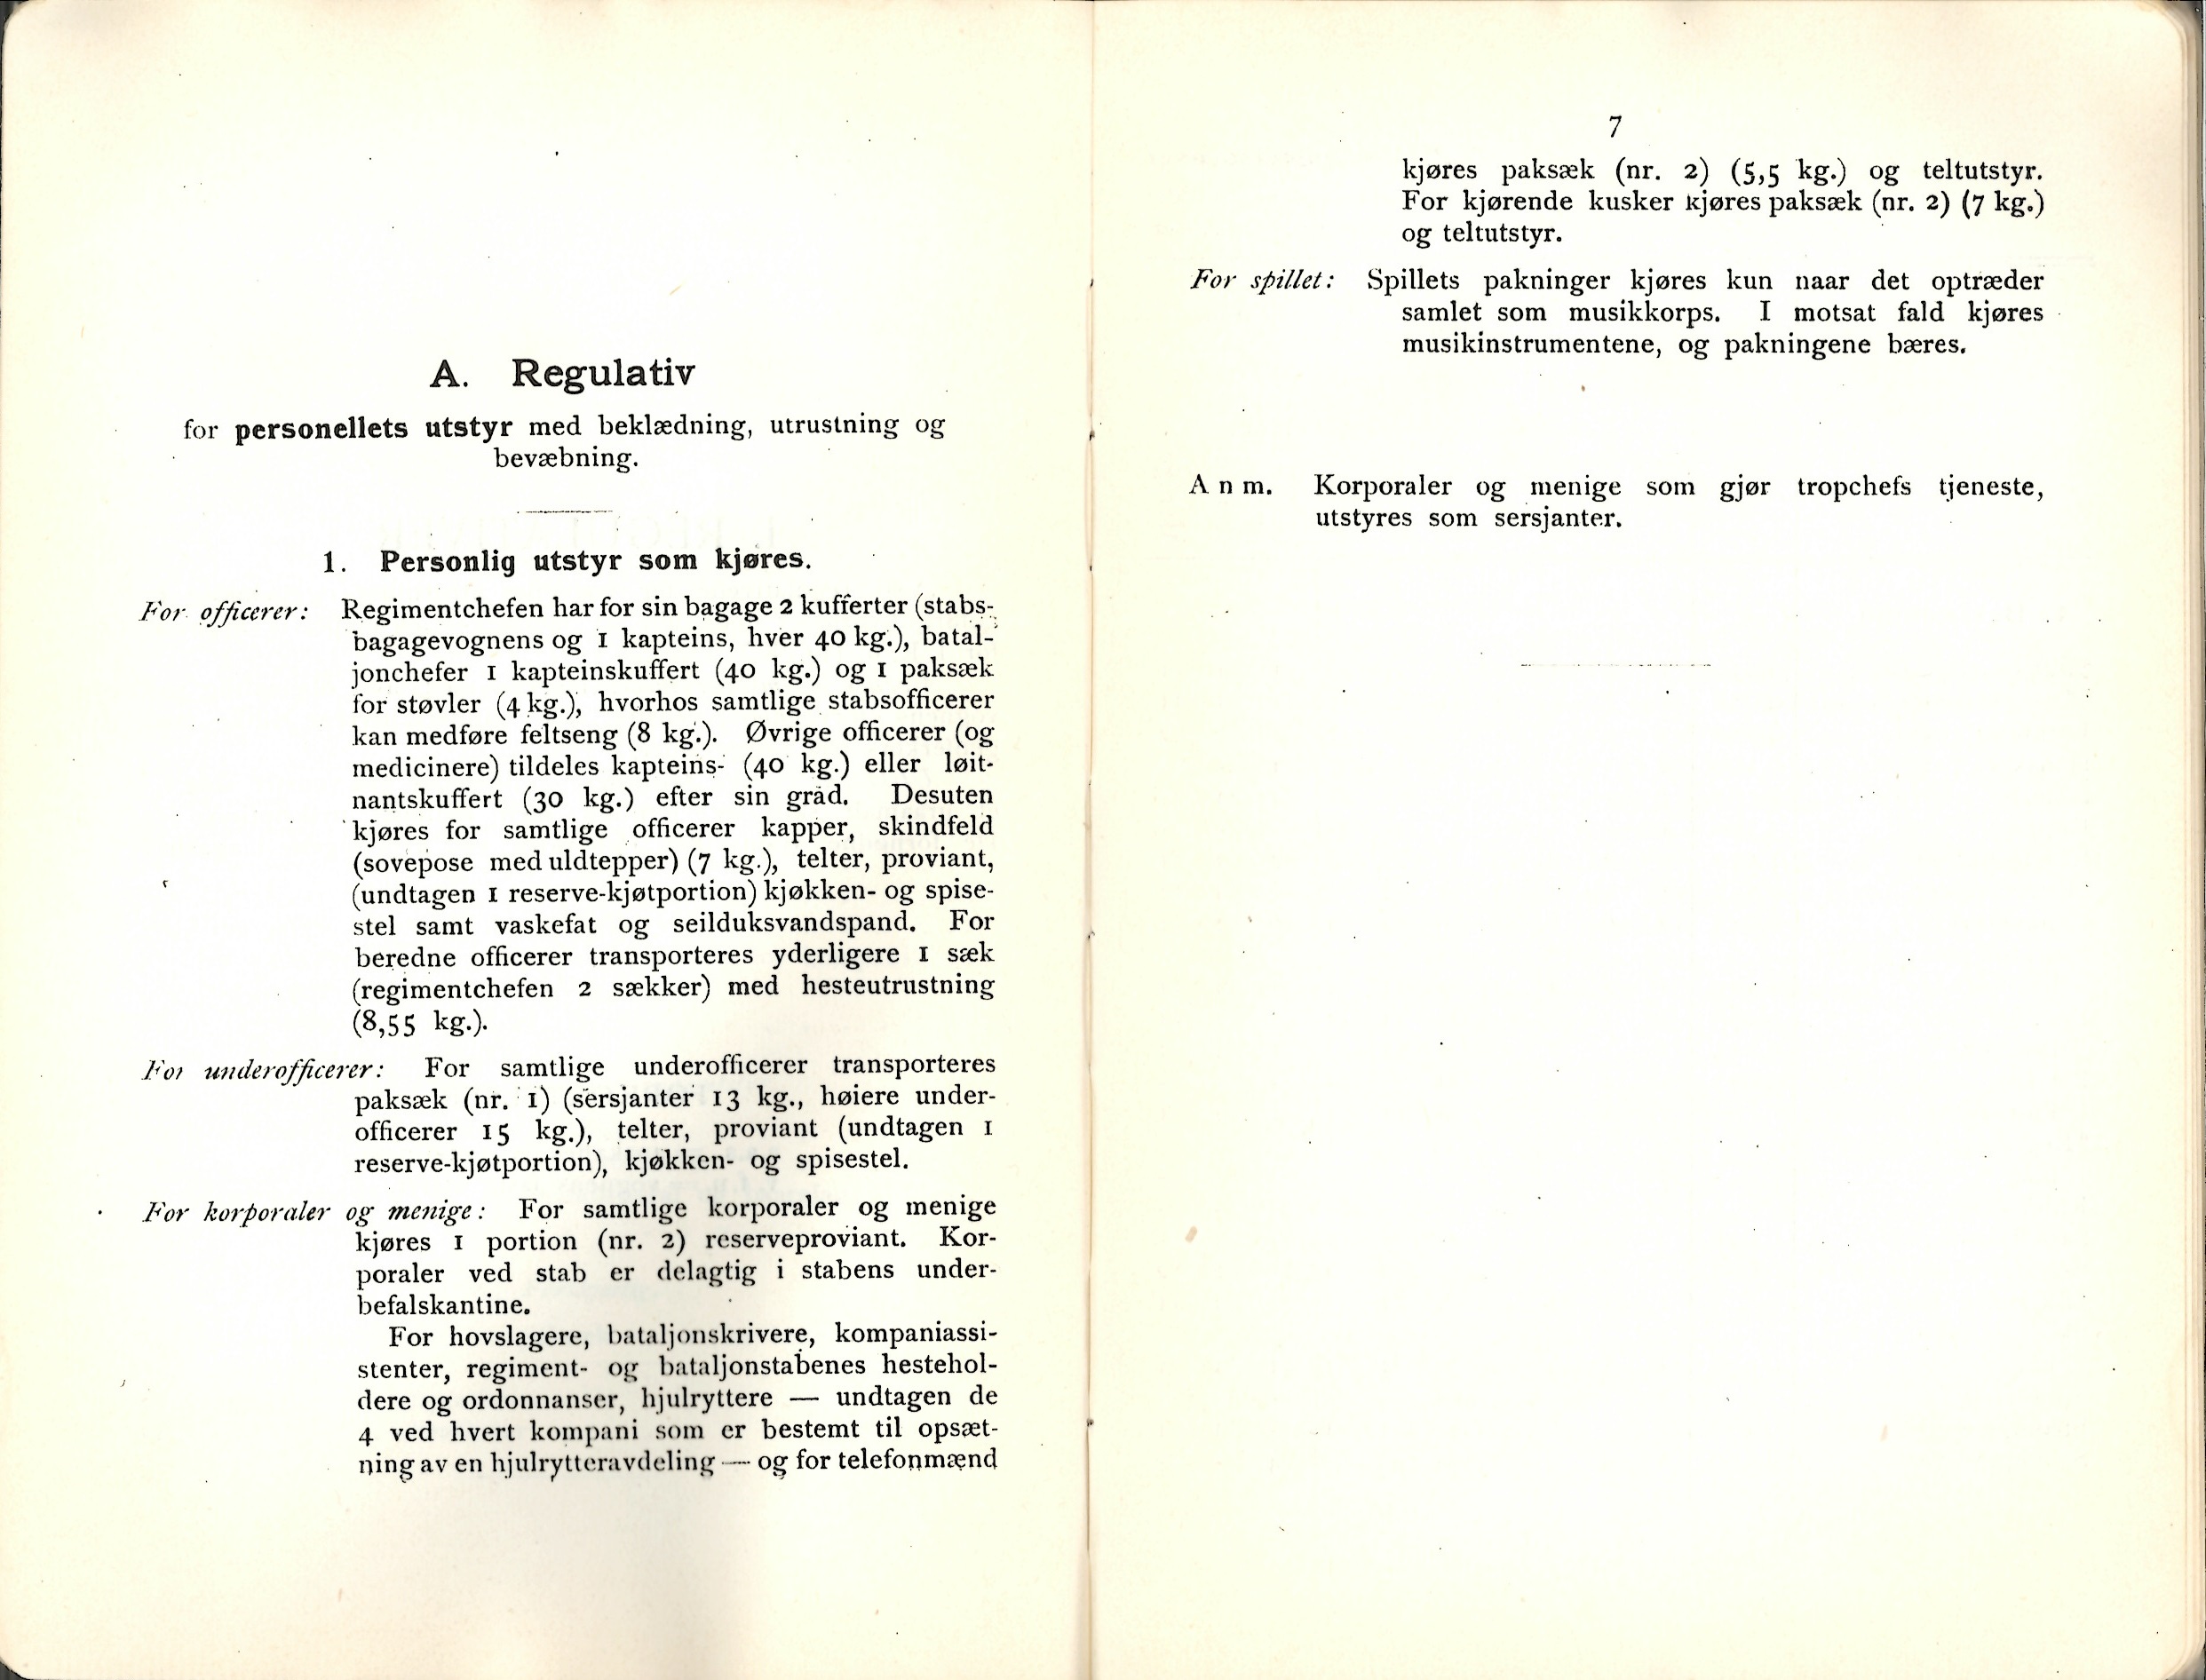 ./doc/reglement/Utrustning/Utrustnings-og-Pakningsplan-1917-4.jpg